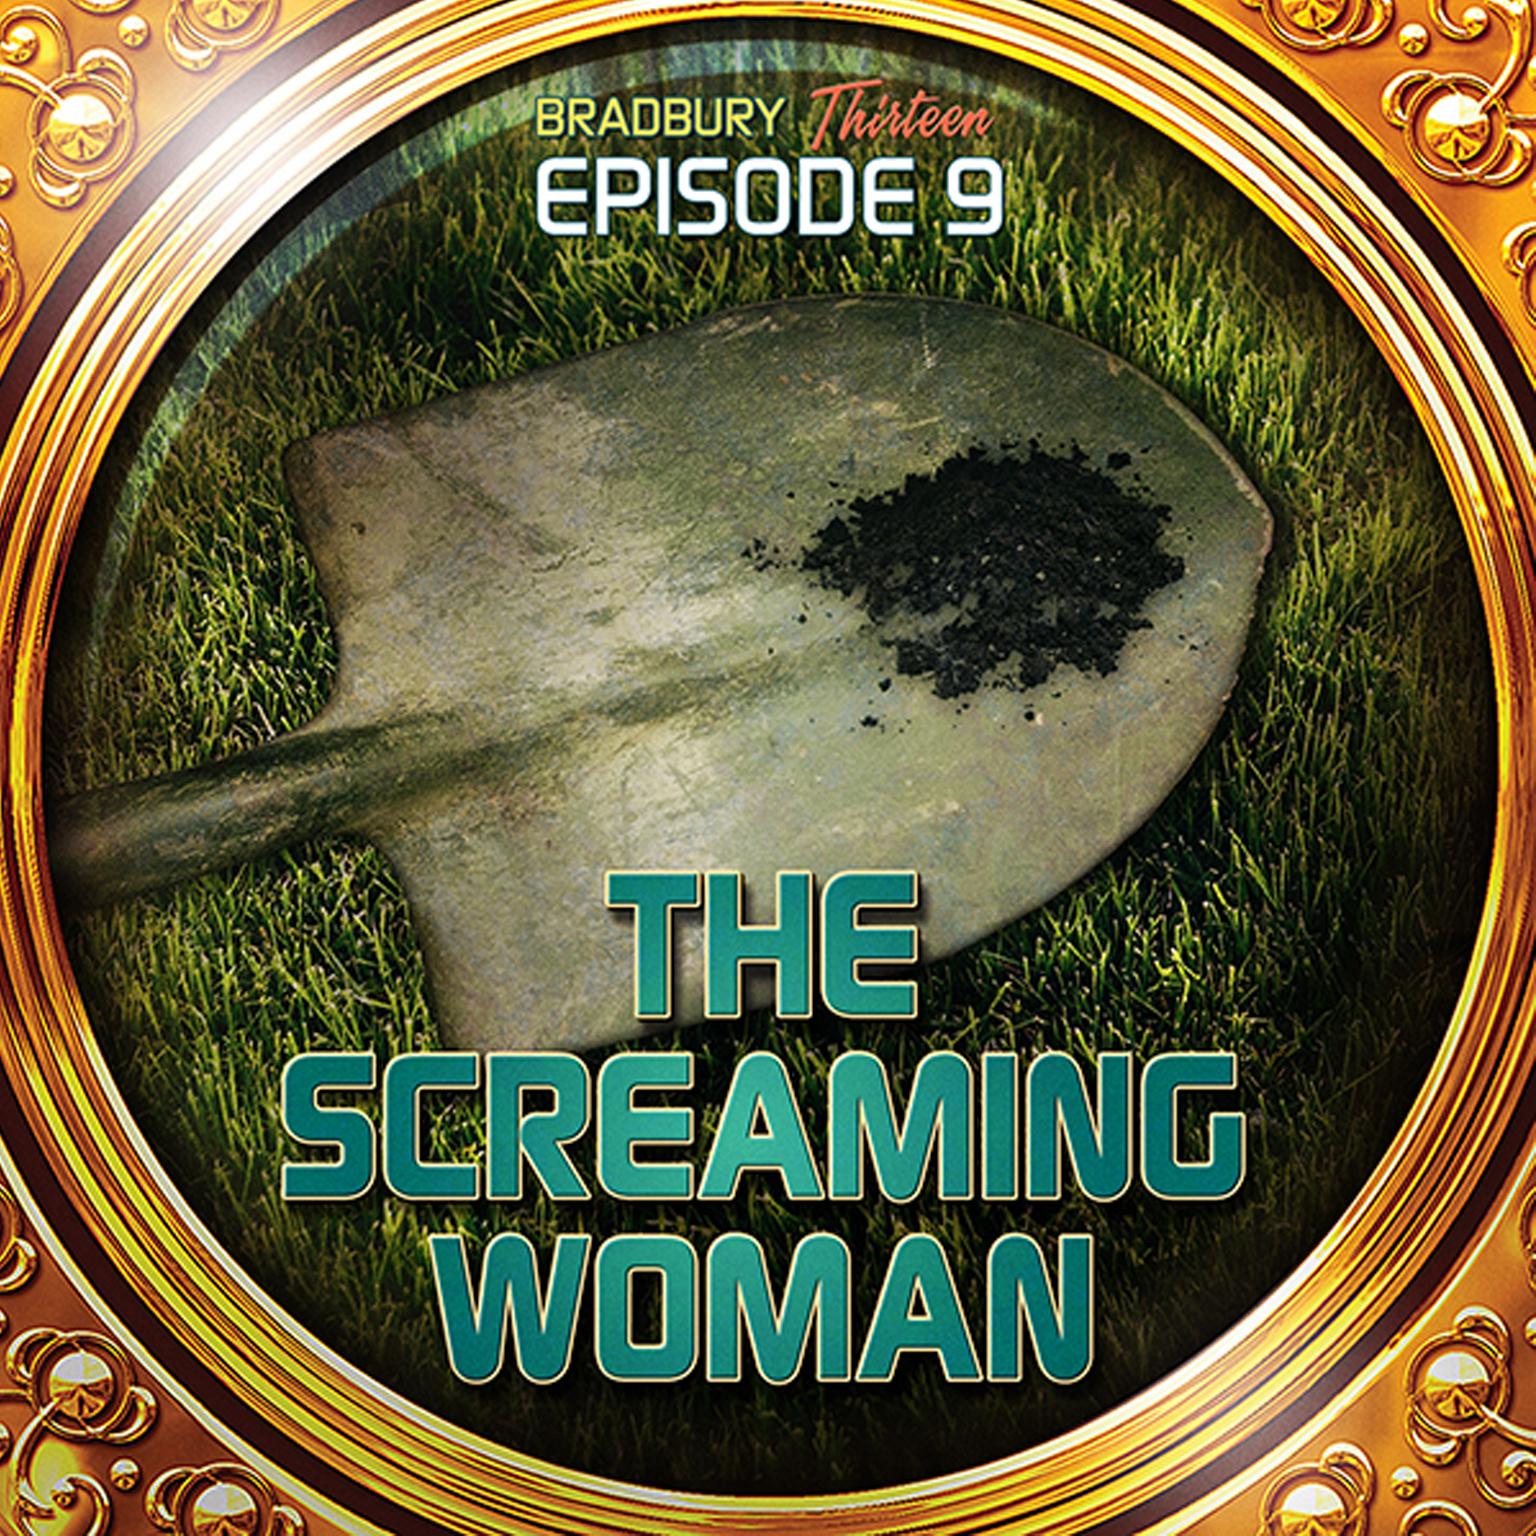 The Screaming Woman: Bradbury Thirteen: Episode 9 Audiobook, by Ray Bradbury